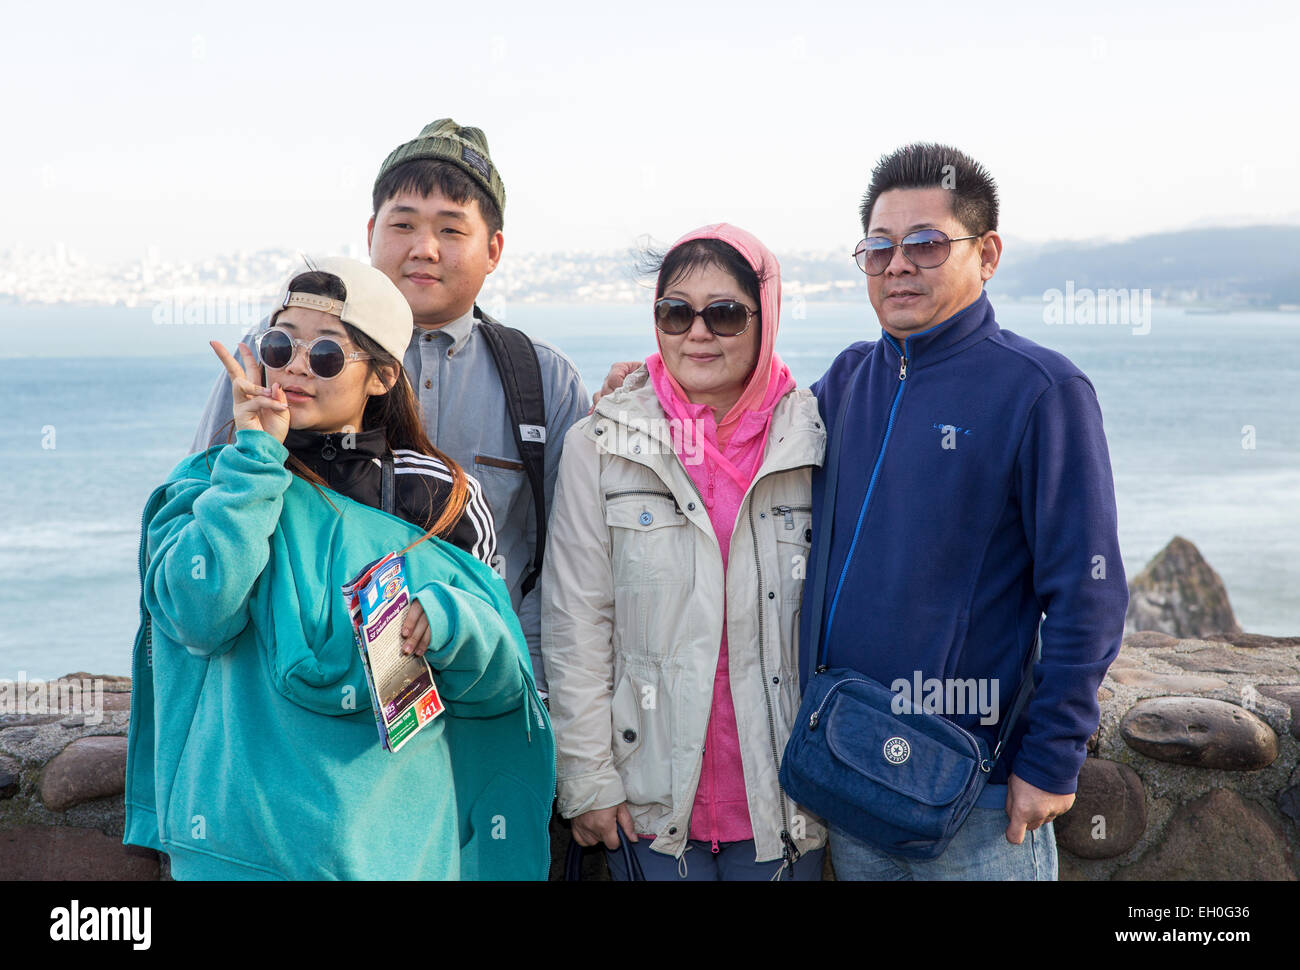 Asiatische Familie, Familie Fotos, für Fotografie, Touristen, Besucher posieren, nördlich der Golden Gate Bridge, Vista Point, Stadt Sausalito, Kalifornien Stockfoto